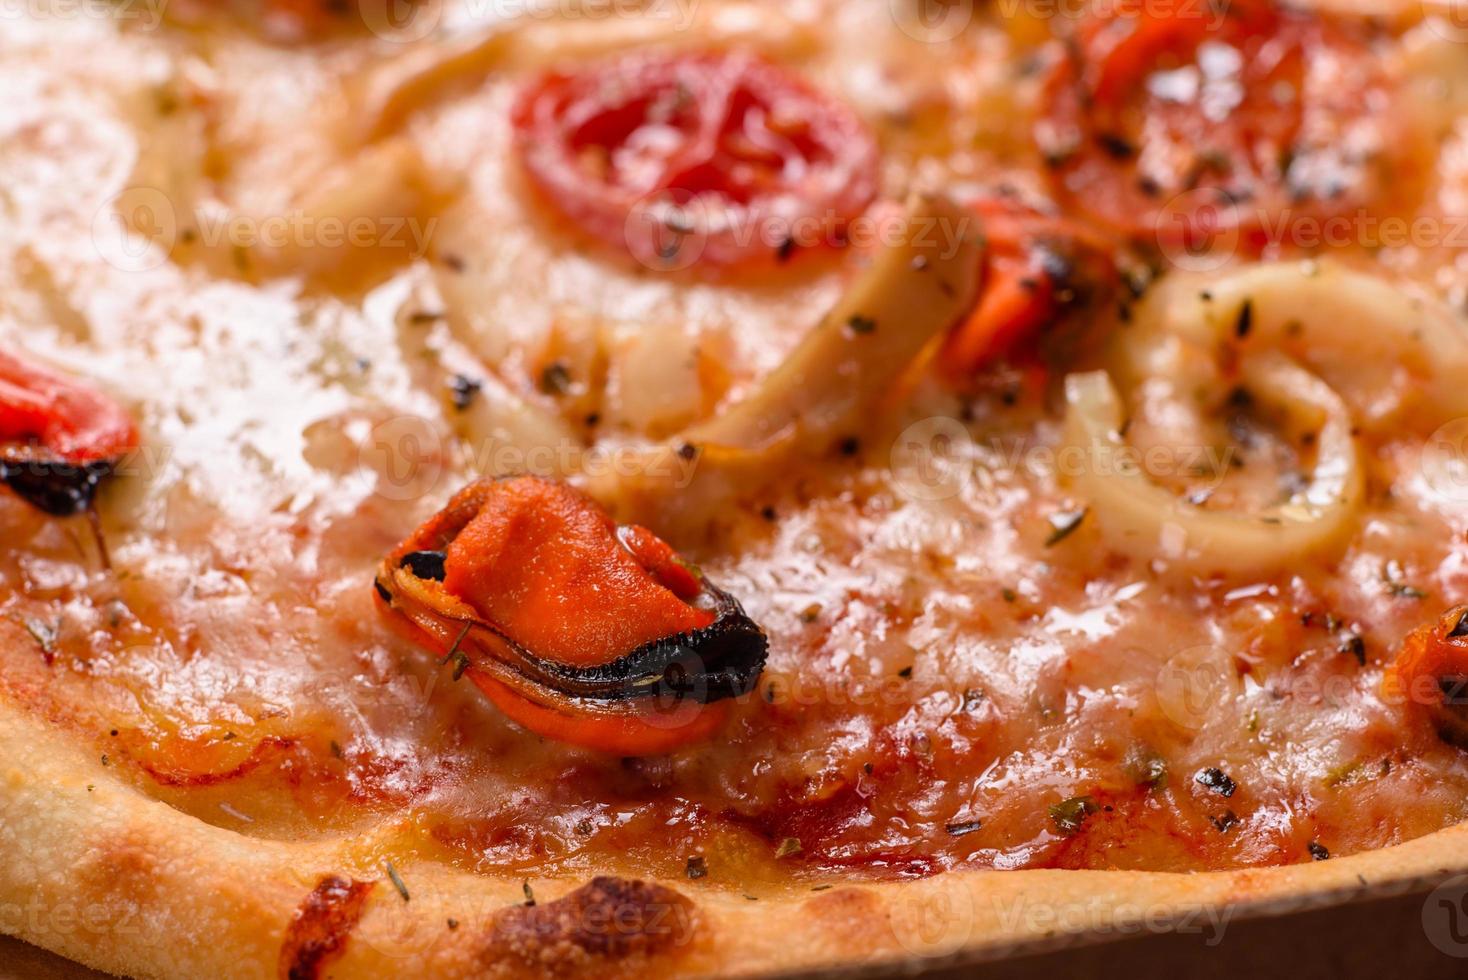 smakelijke gesneden pizza met zeevruchten en tomaat op een betonnen ondergrond foto